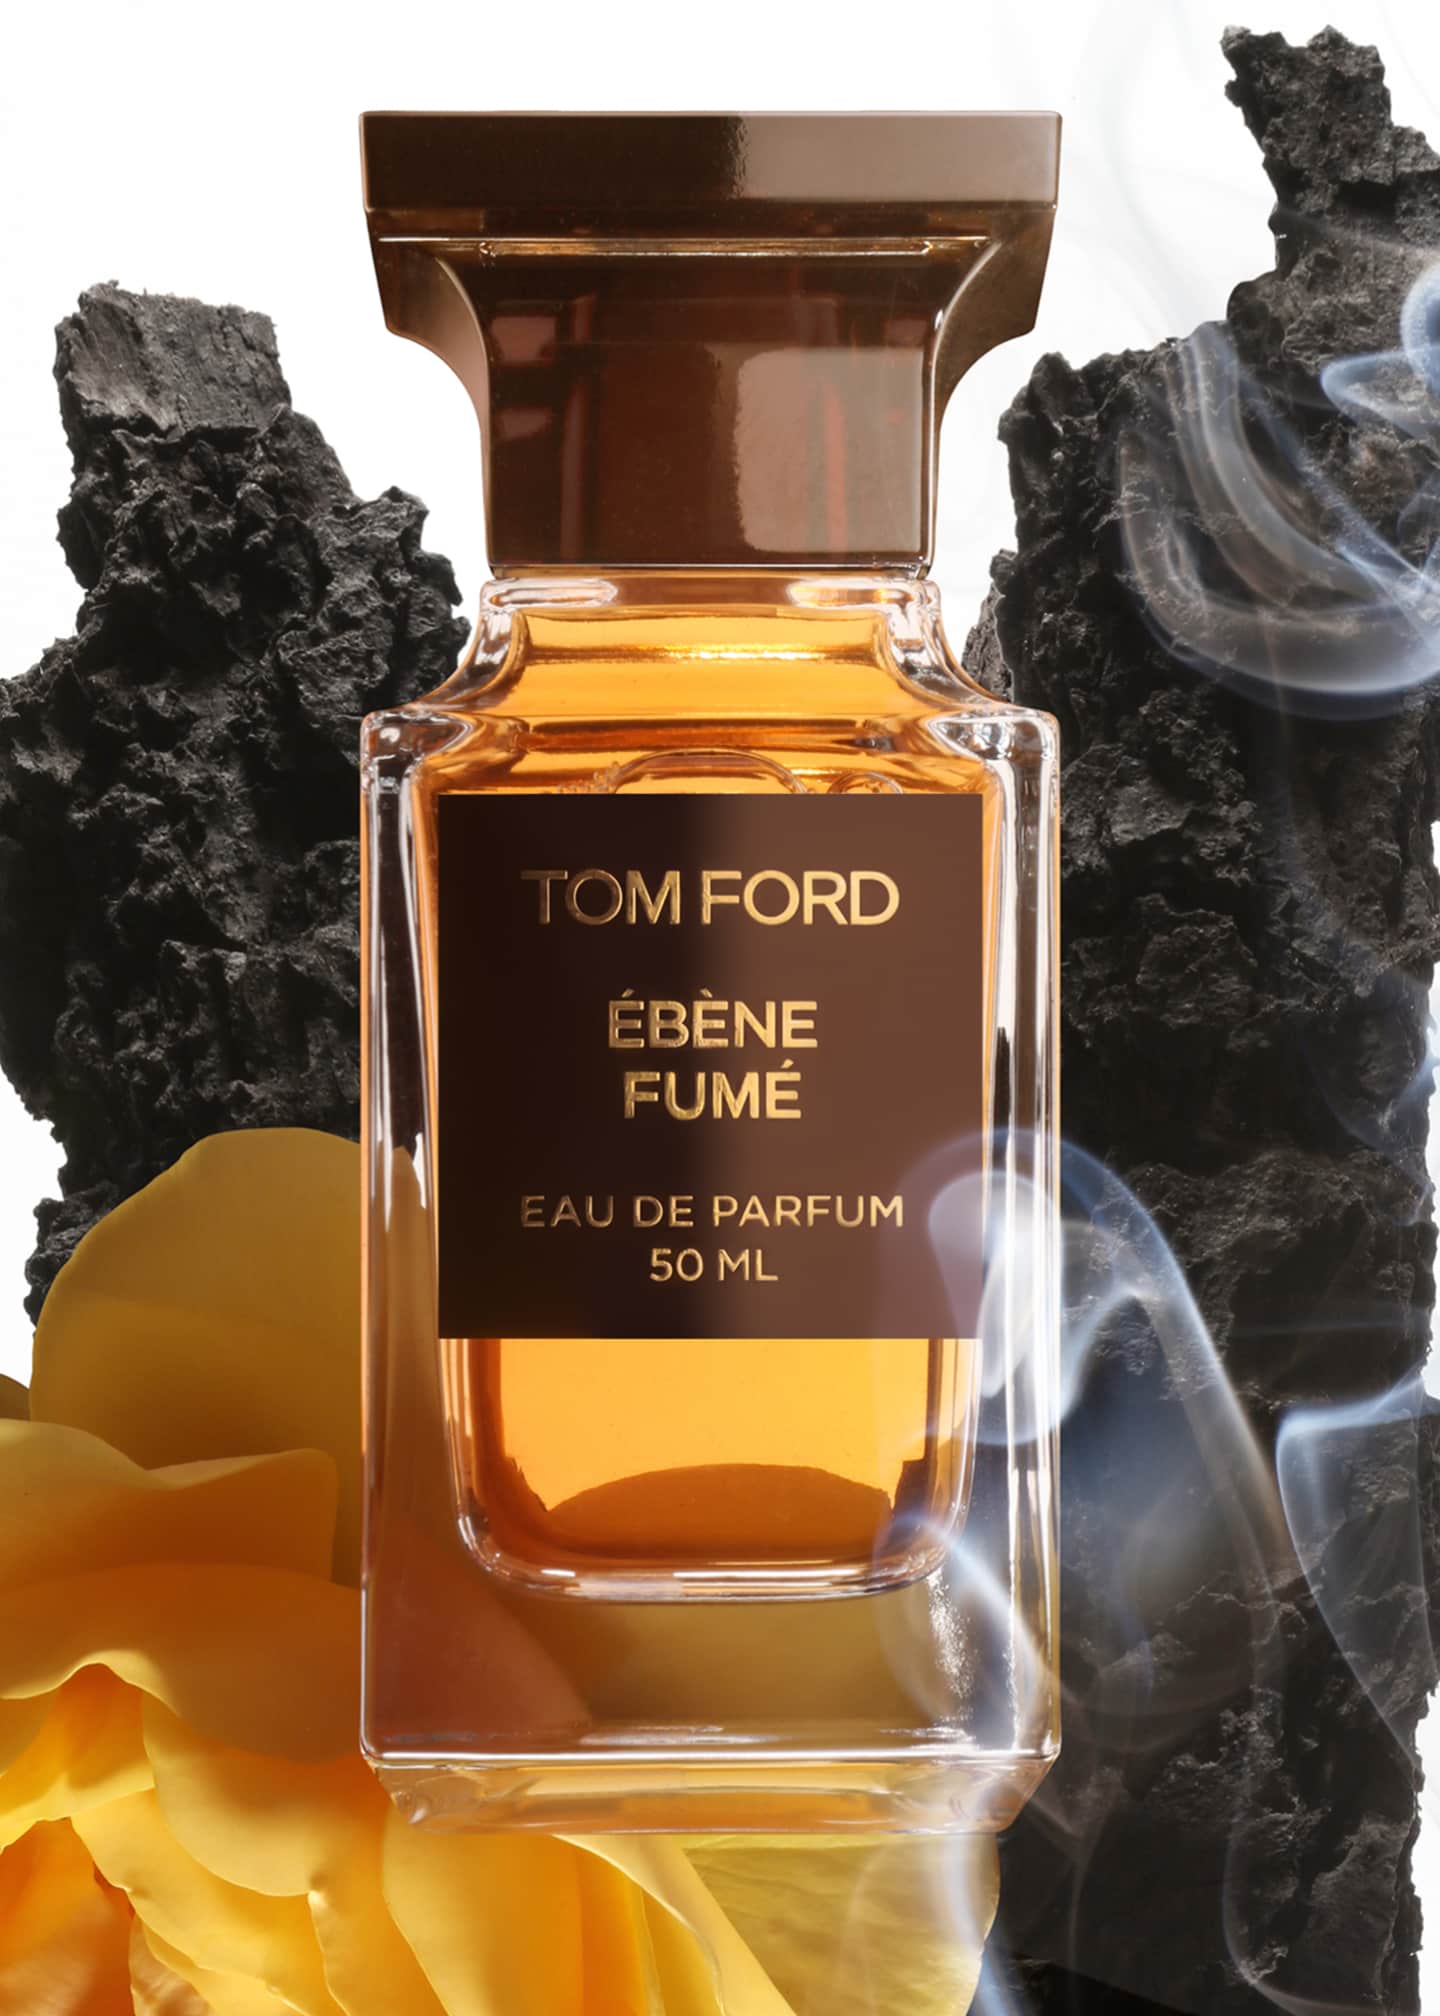 TOM FORD Ebene Fume Eau de Parfum, 3.4 oz. - Bergdorf Goodman